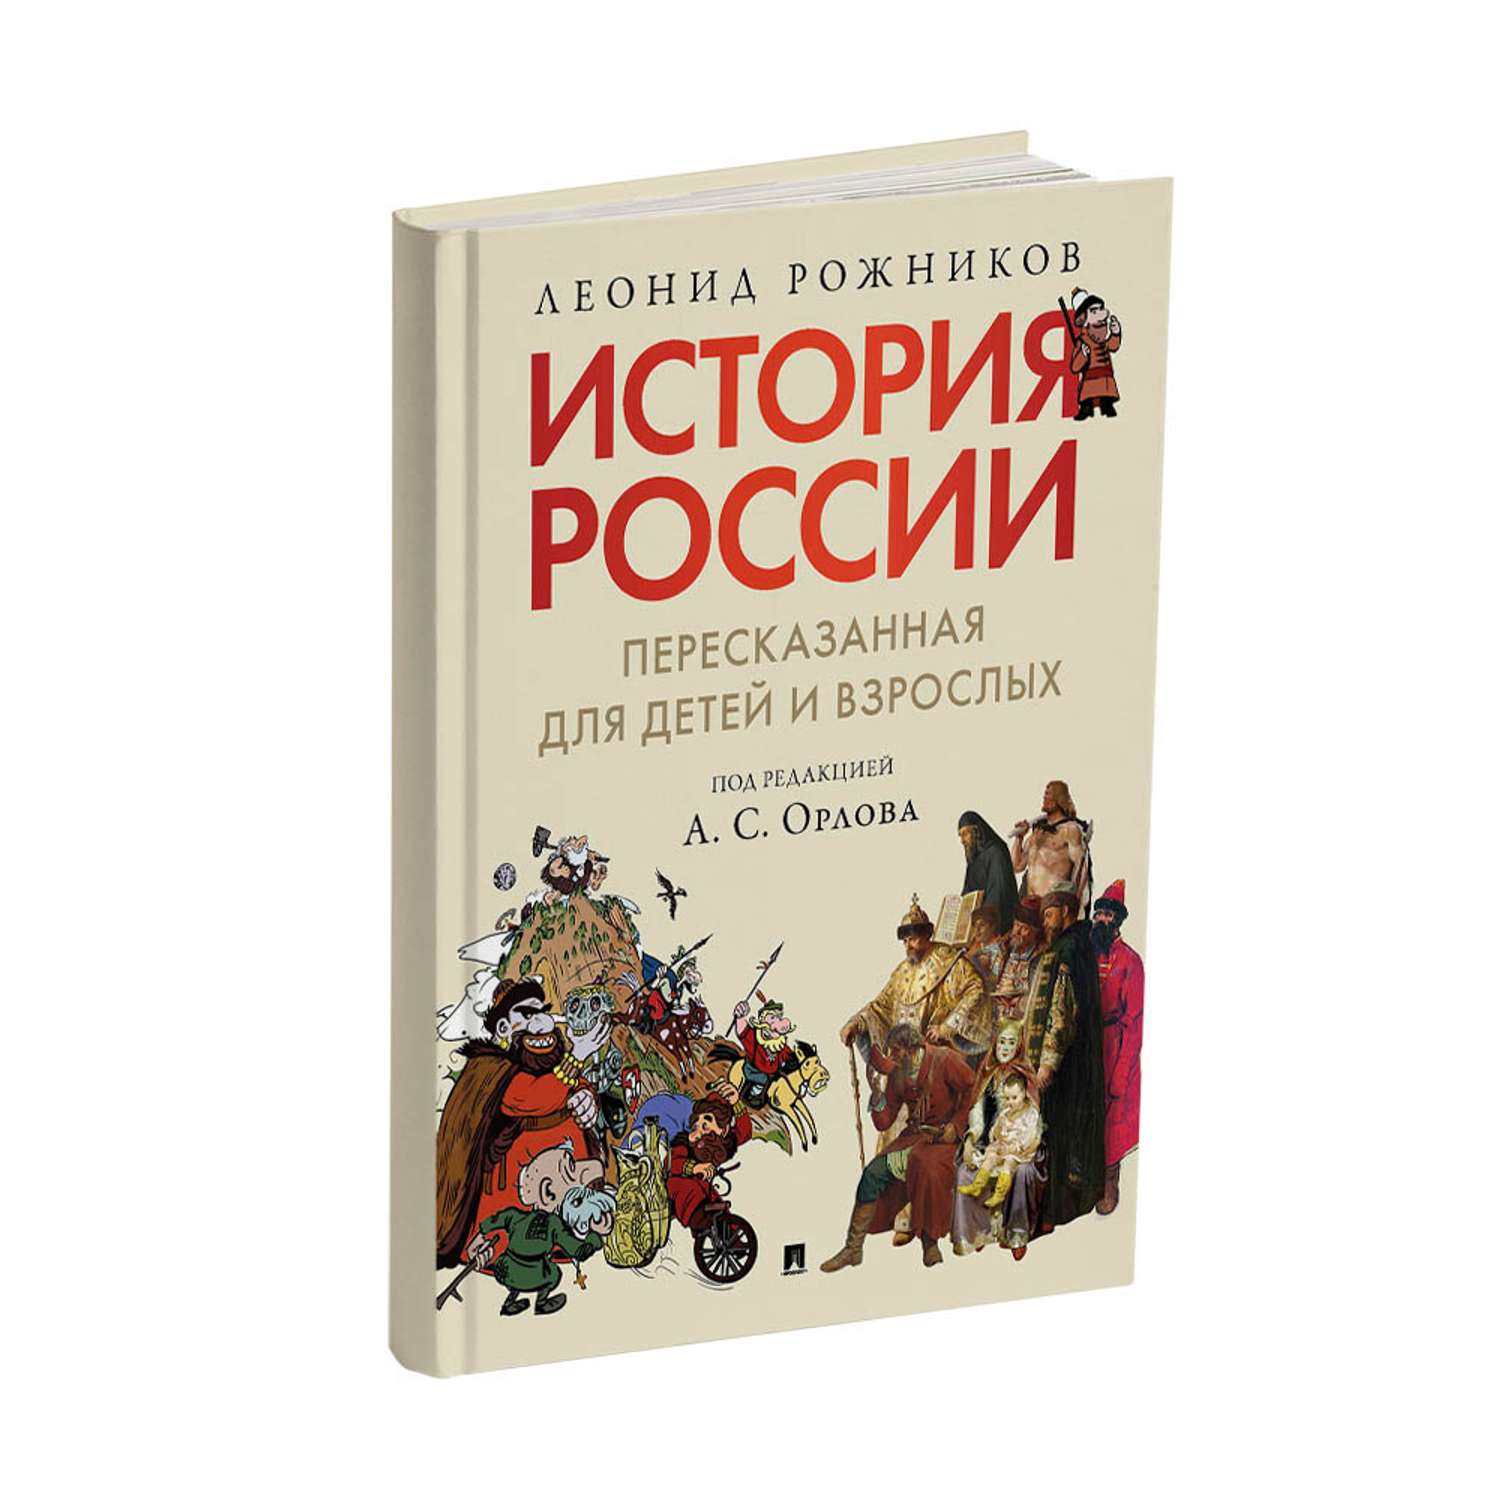 Книга Проспект История России пересказанная для детей и взрослых Часть 1 - фото 1